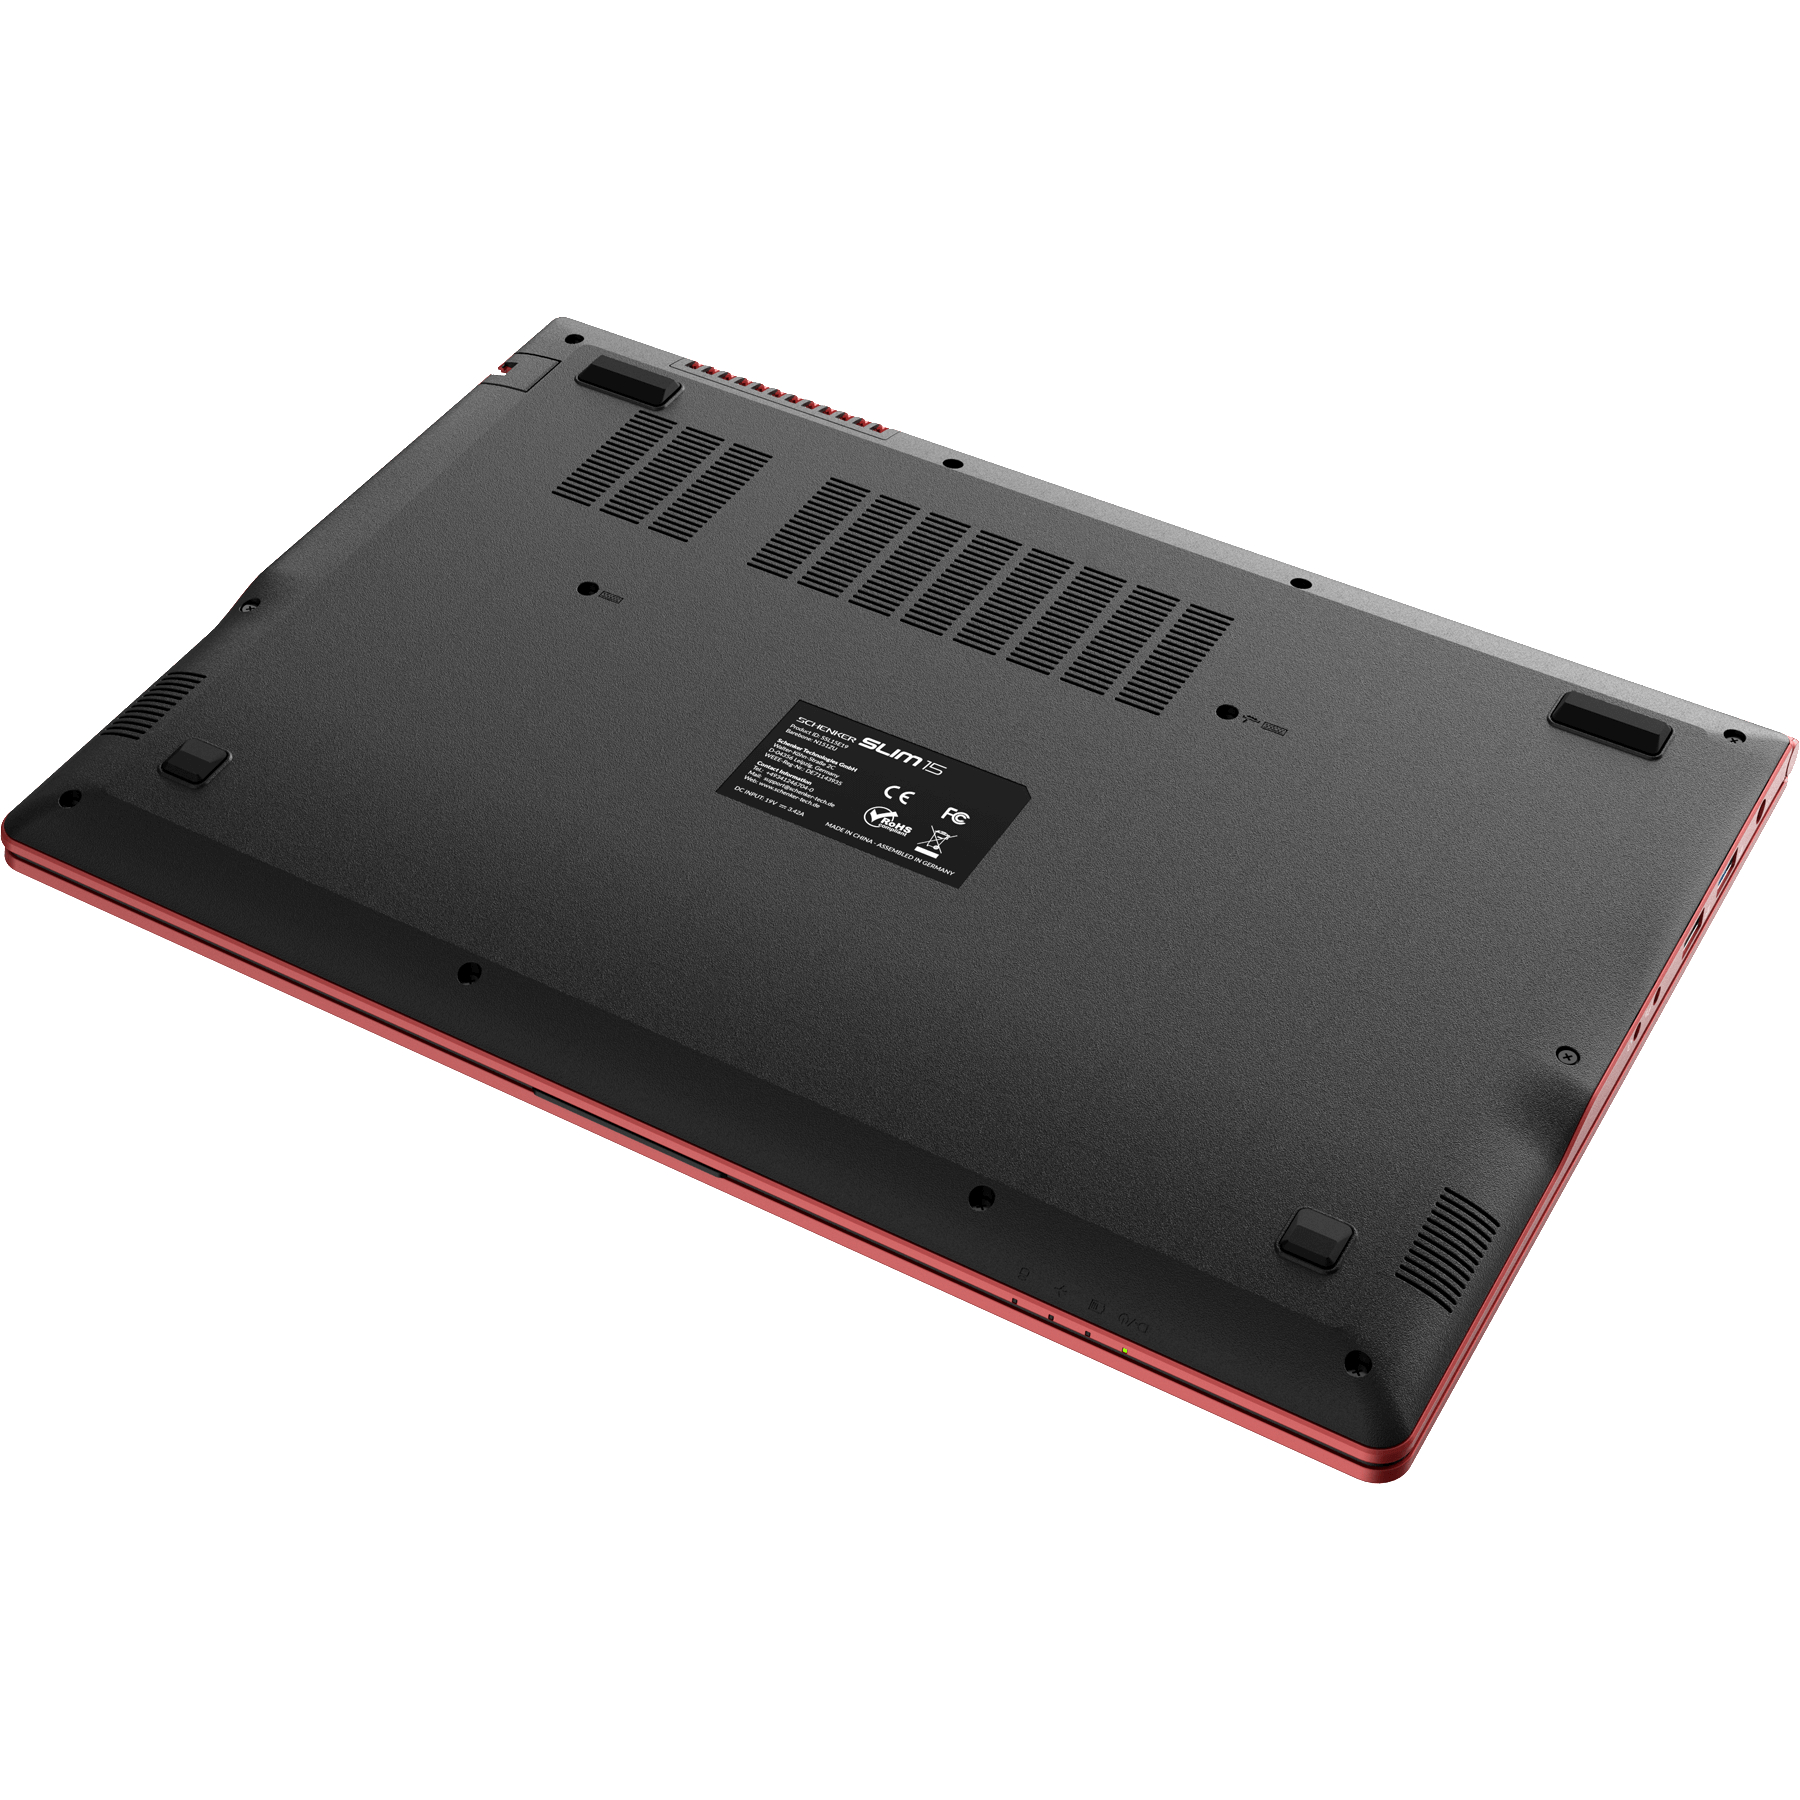 500 RED Intel UHD RAM, GB SCHENKER 15 - SLIM Zoll Intel® Grafik, Notebook 15,6 i5 Prozessor, mSSD, Display, L19hvf, Core™ mit 16 GB Rot